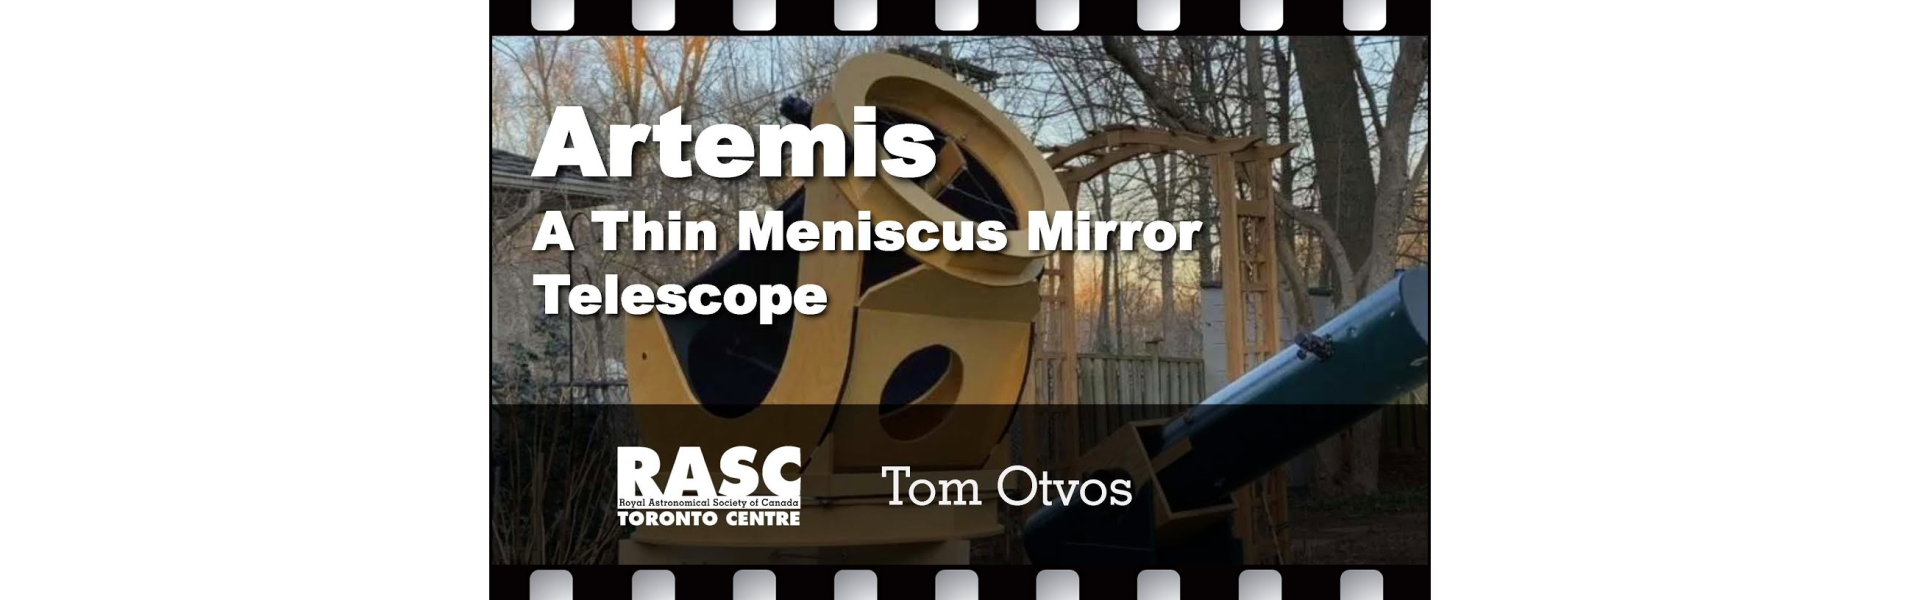 Artemis: A Thin Meniscus Mirror Telescope